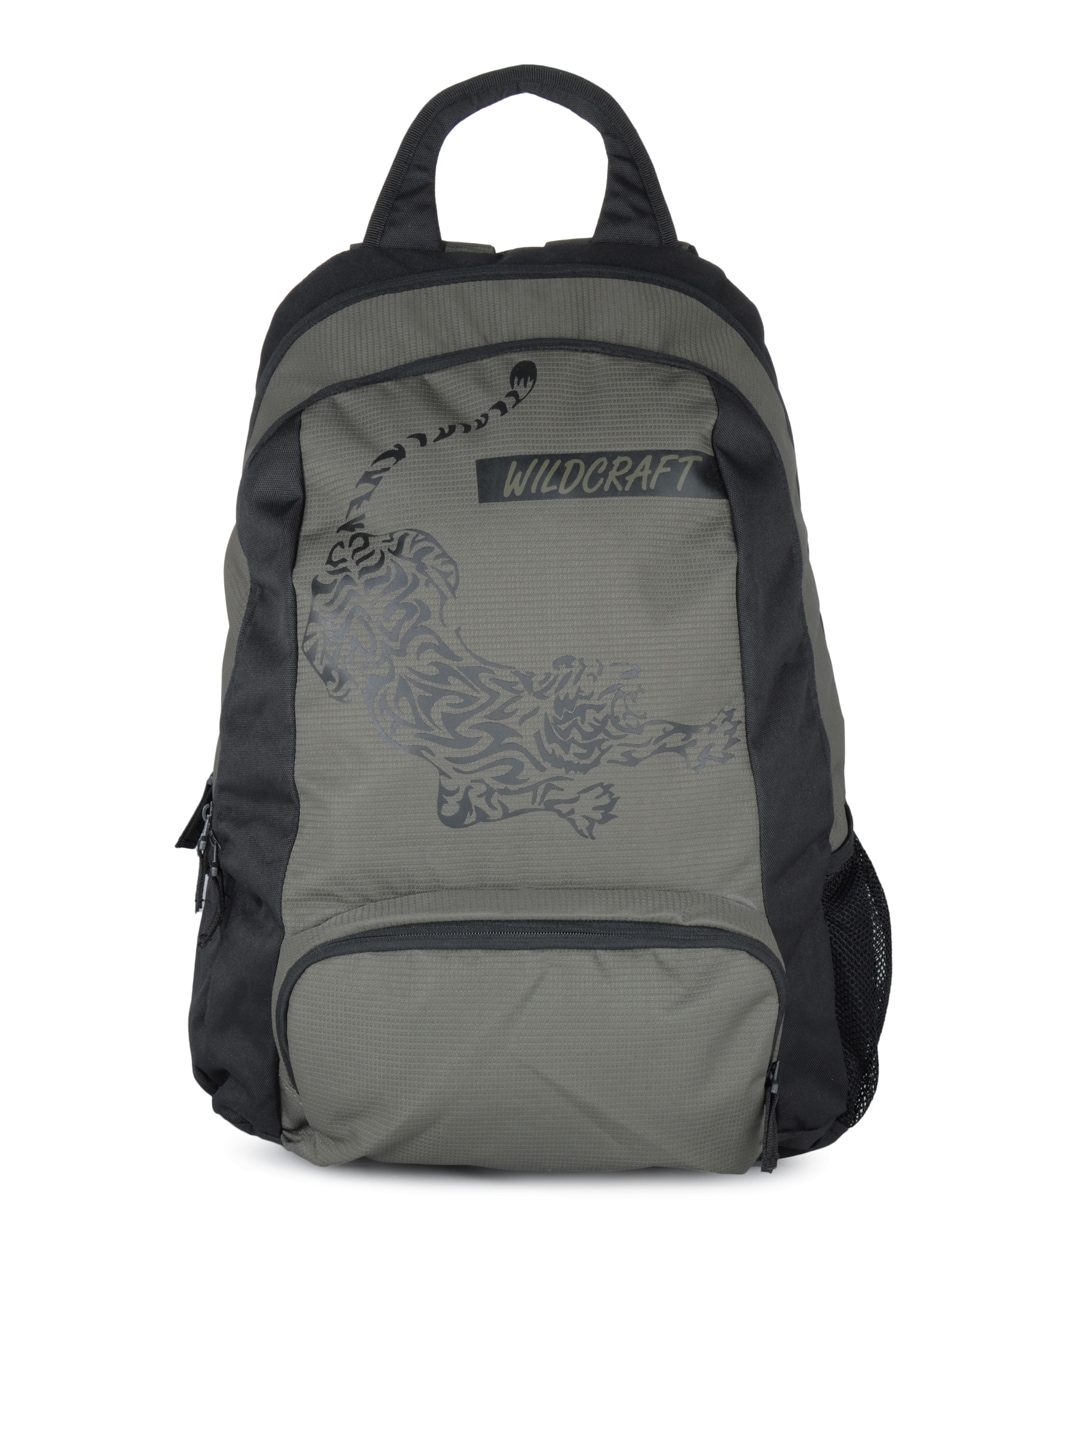 Wildcraft Unisex Olive & Black Backpack